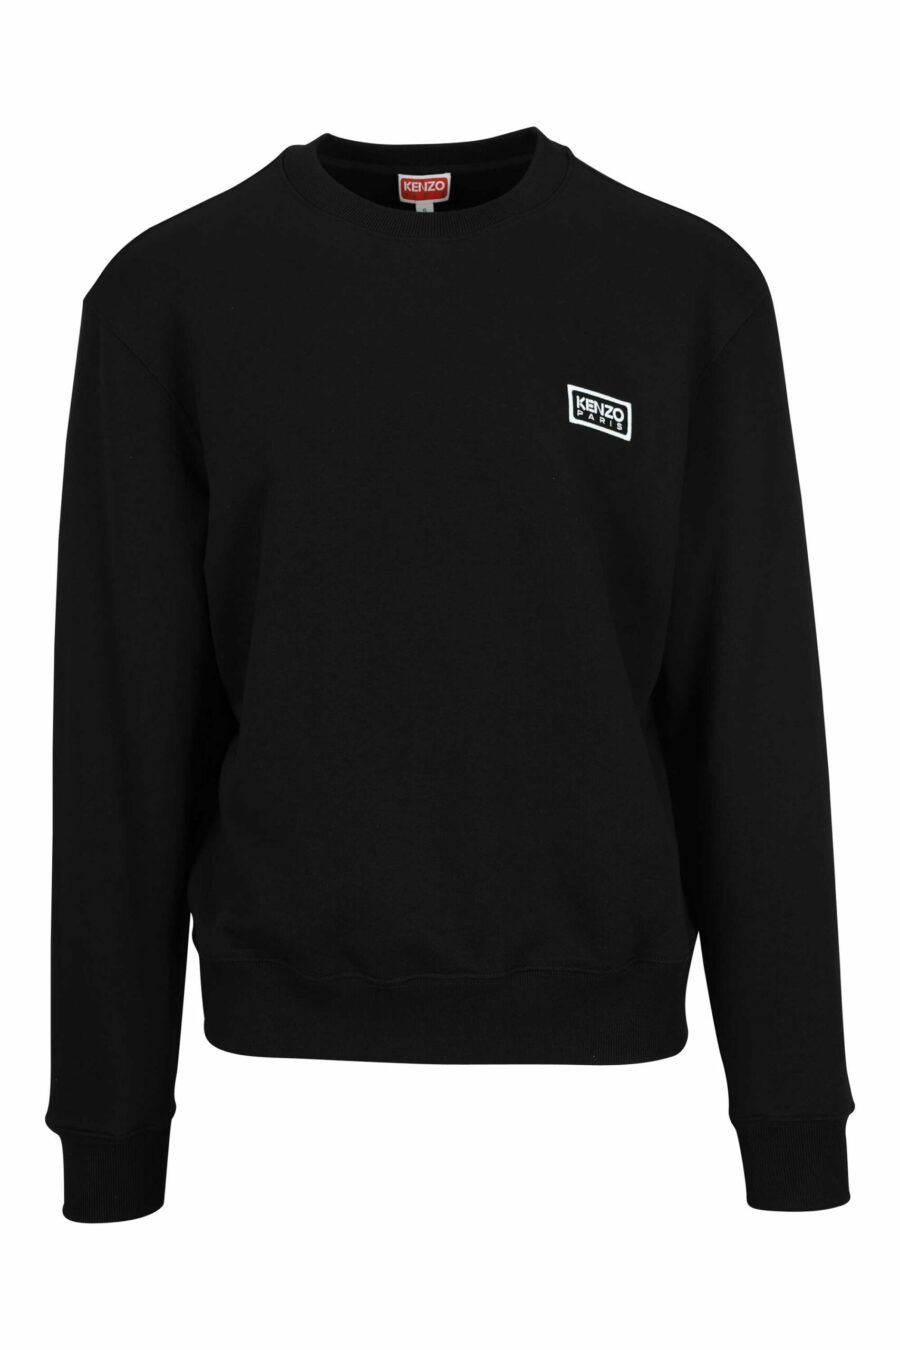 Sweatshirt noir avec minilogue "kenzo tag" - 3612230628946 en écailles